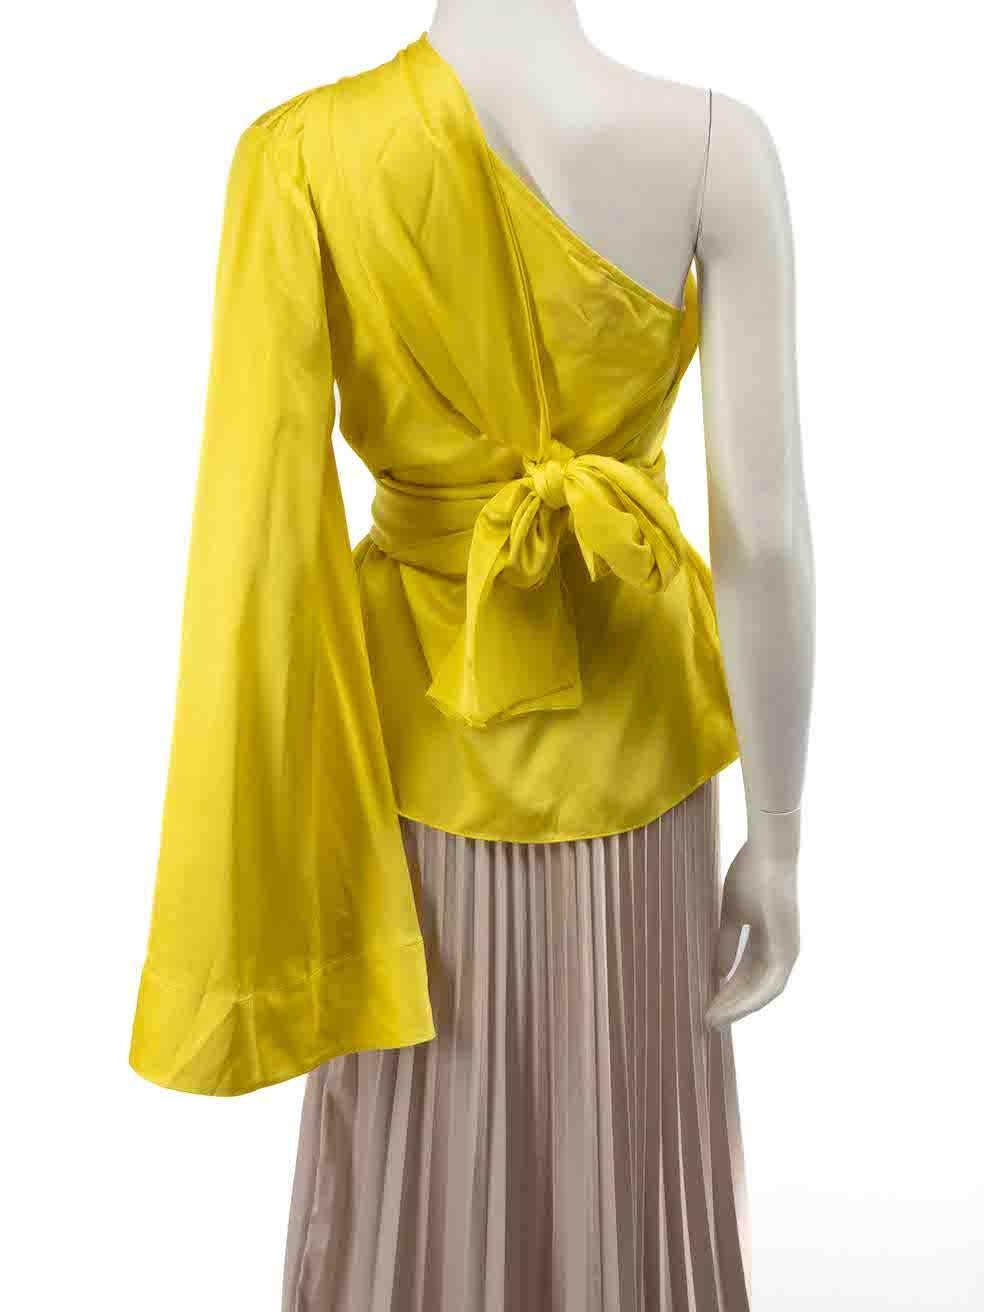  Solace London - Haut asymétrique en soie jaune, taille S Pour femmes 